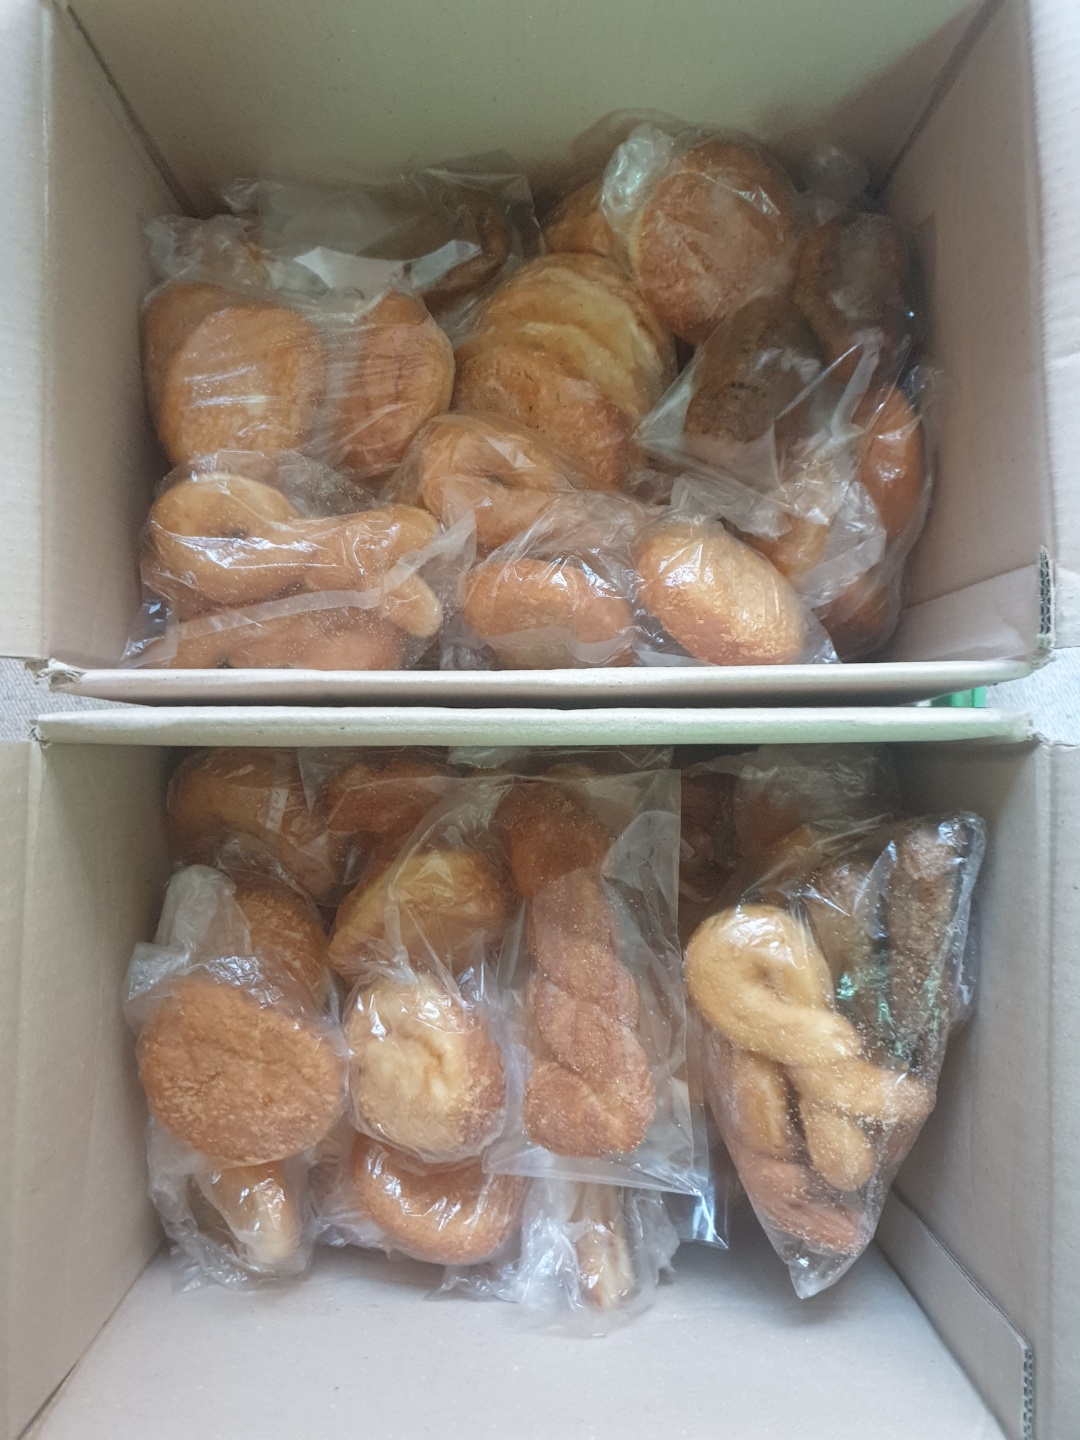 송사부 고로케 이마트 분당점에서 빵(고로케) 170개를 후원해주셨습니다!